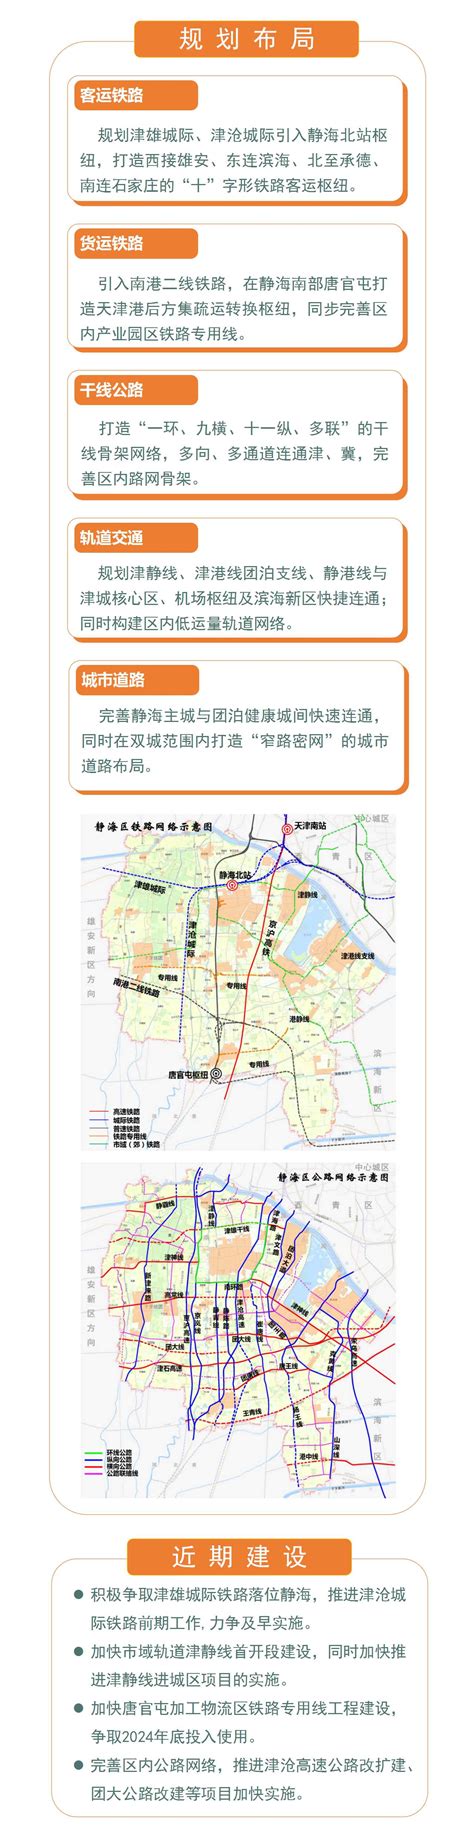 【一图读懂】《天津市静海区综合交通体系规划（2021—2035年）》_ 图片解读_ 天津市静海区人民政府